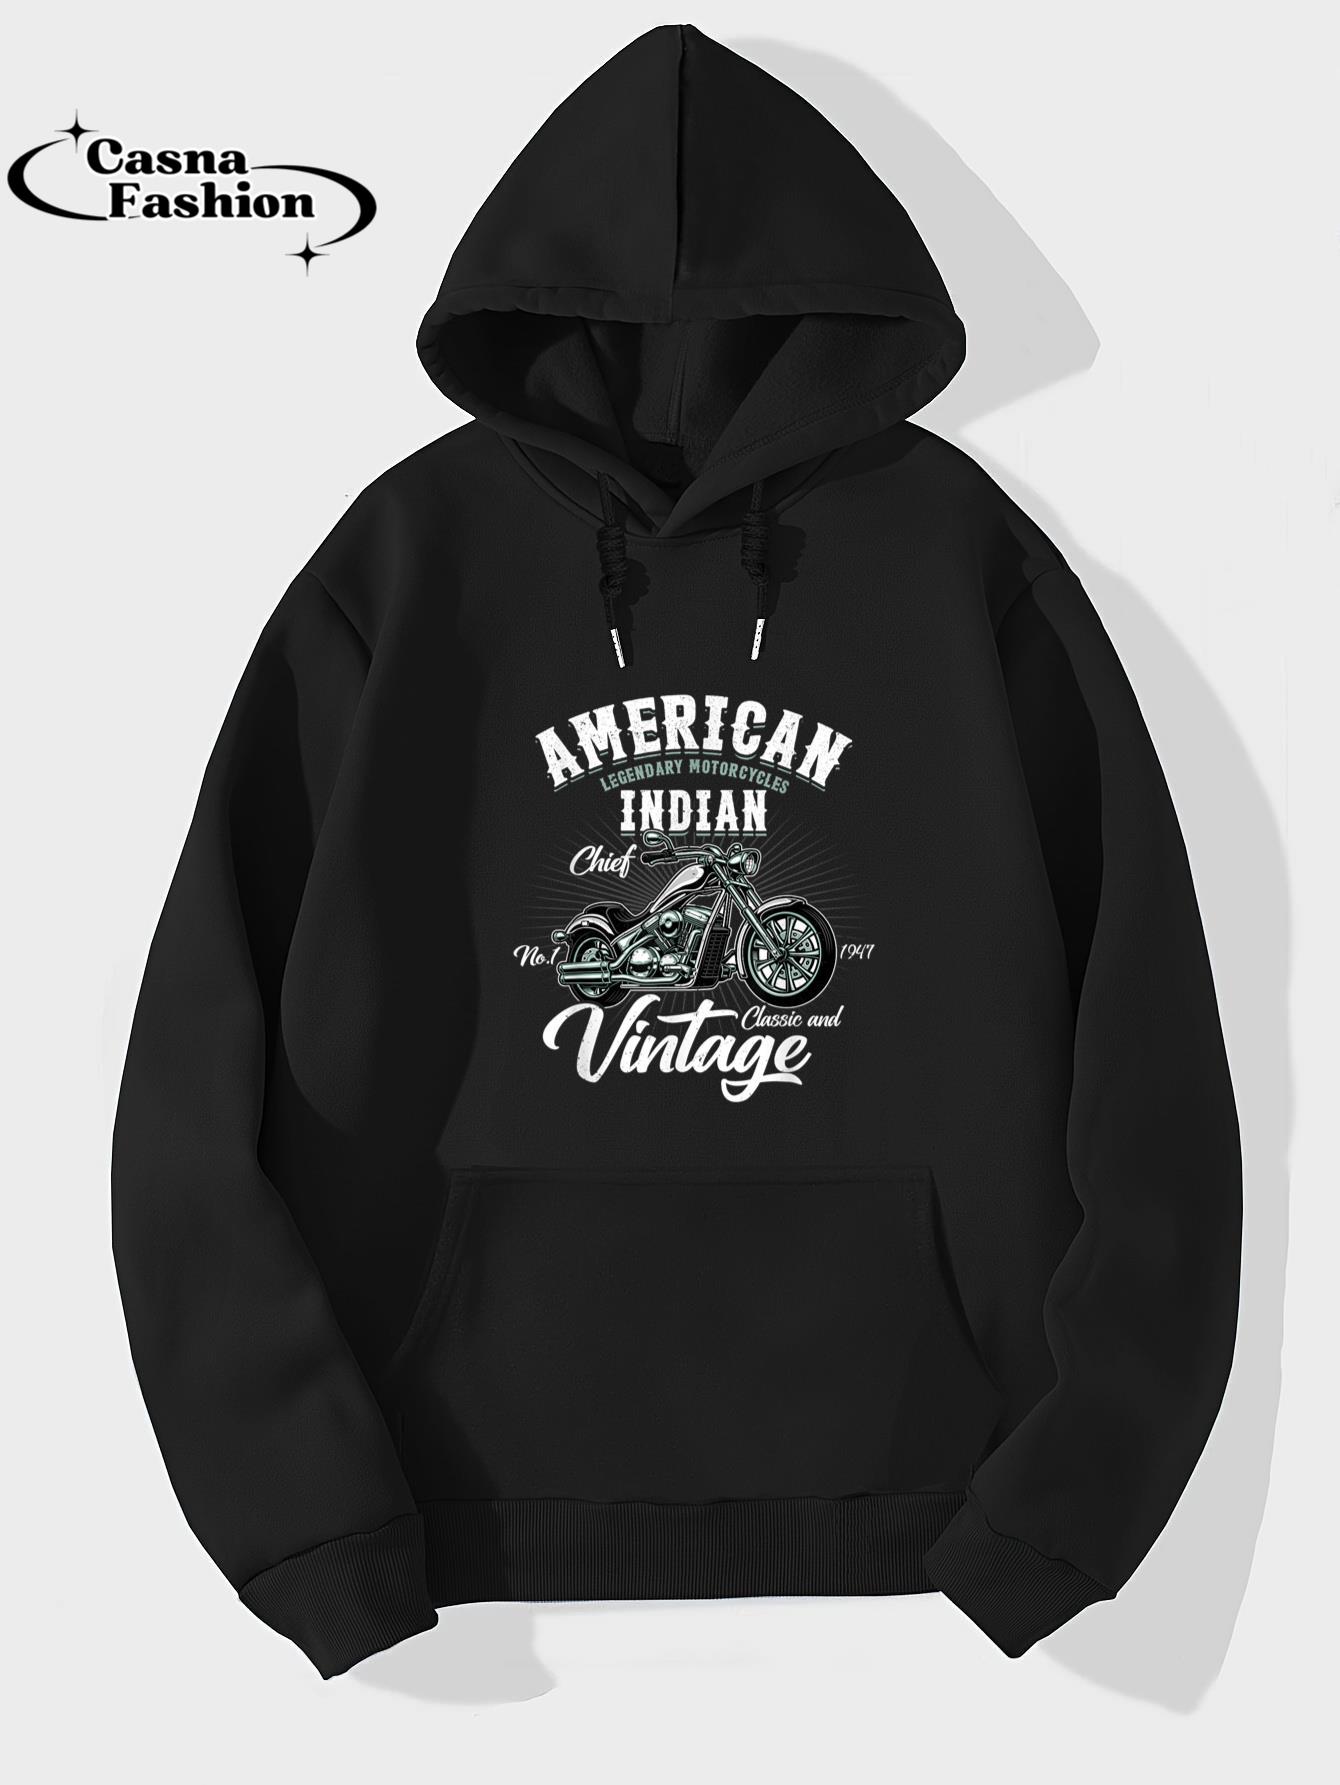 casnafashion_Hoodie_Vintage Retro Old Biker American Motorcycle Indian Motocross T-Shirt_hoodie_black hoodie